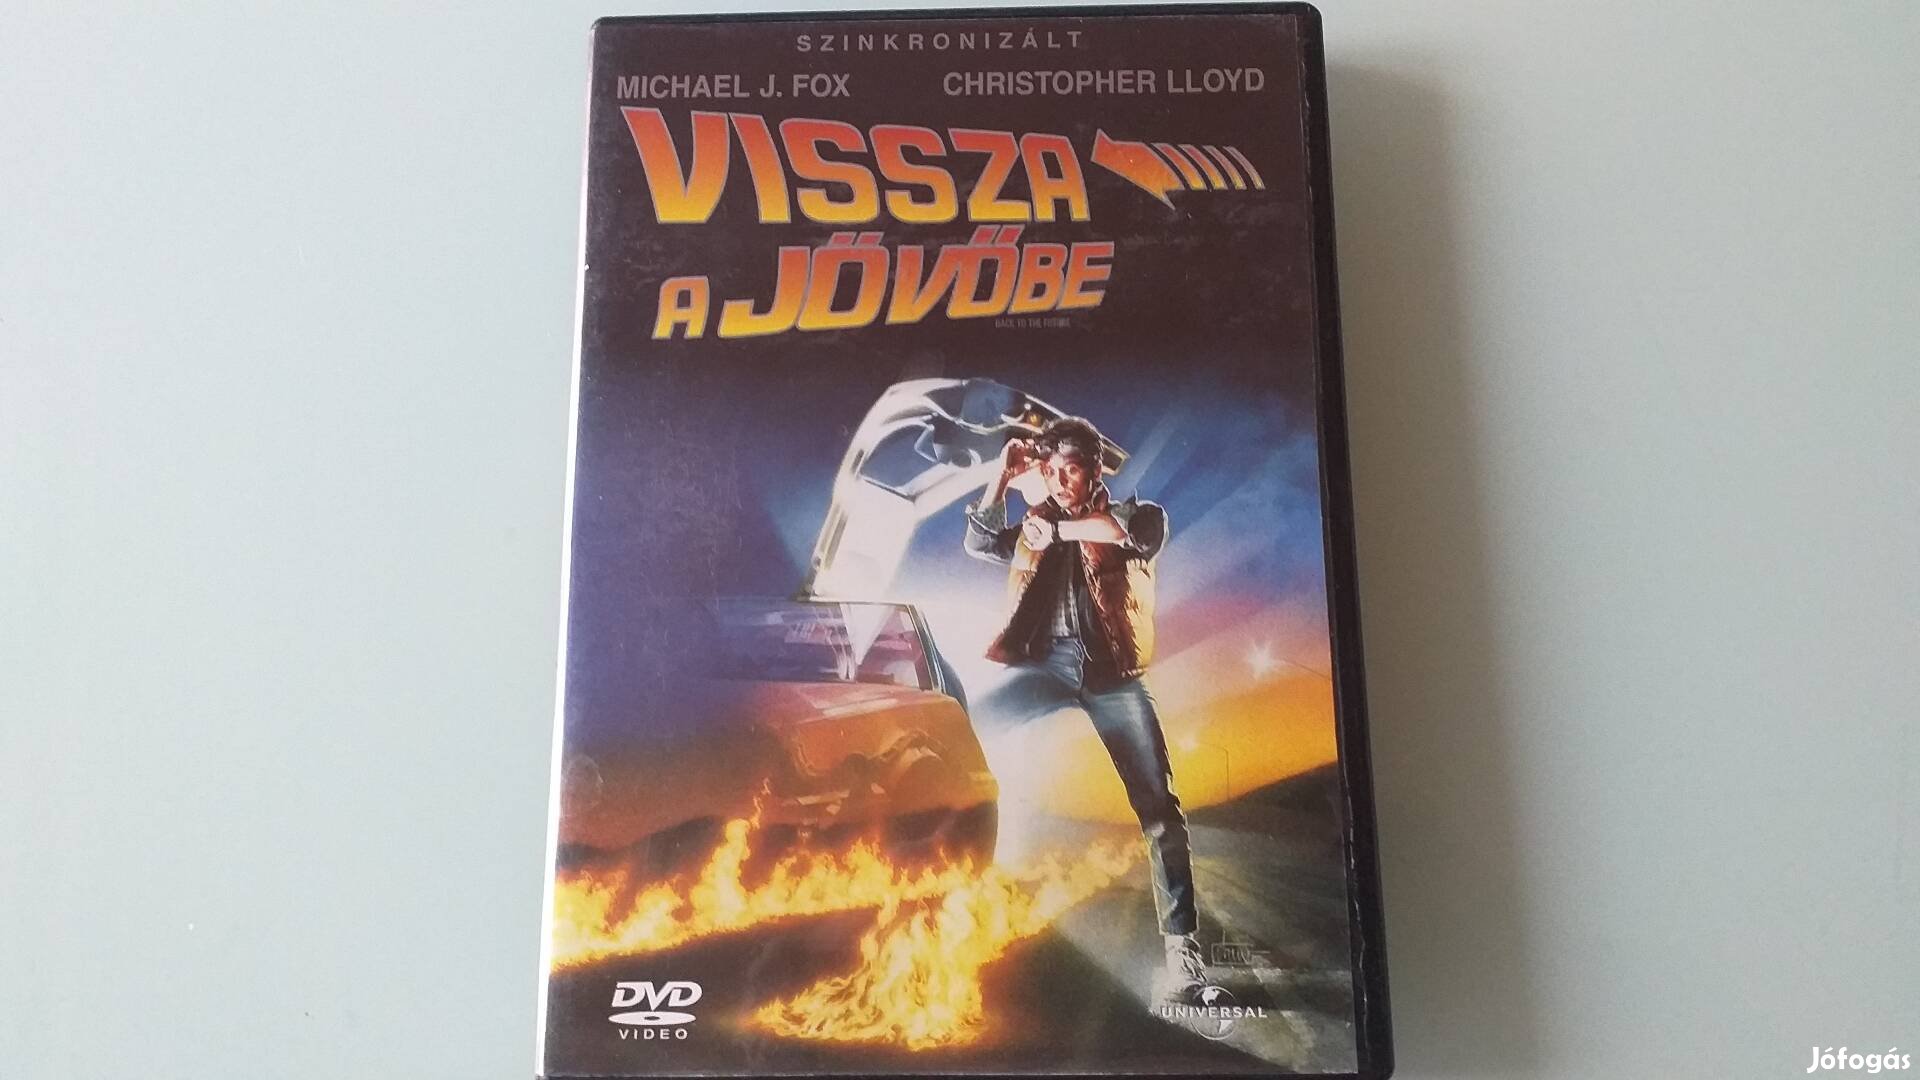 Vissza a jövőbe DVD film-Michael J. Fox